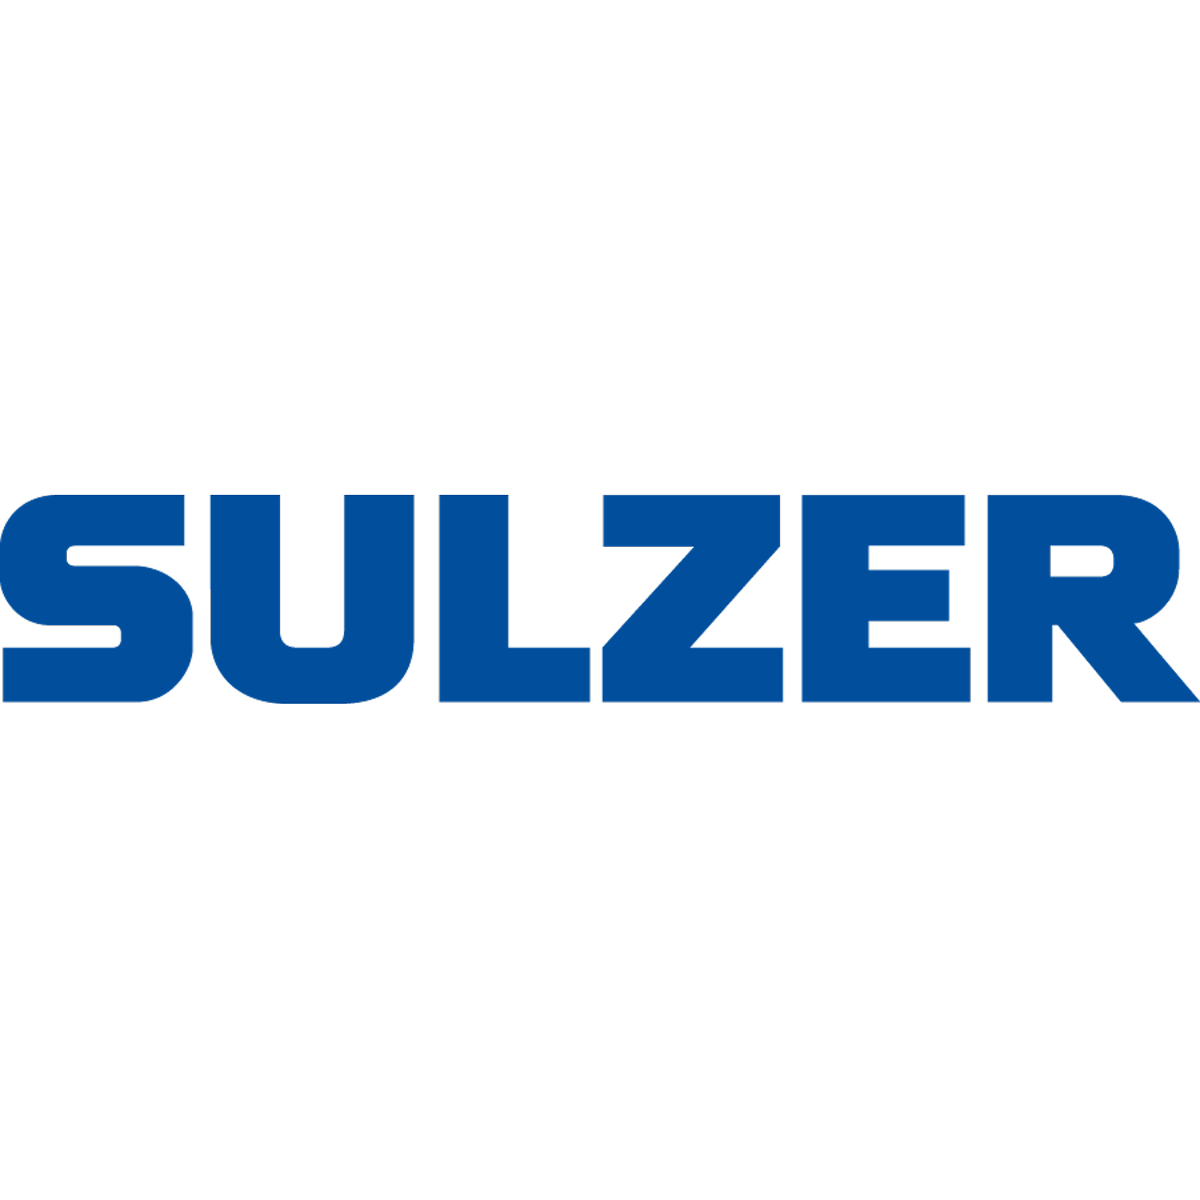 Sulzer Pumps Wastewater Germany GmbH